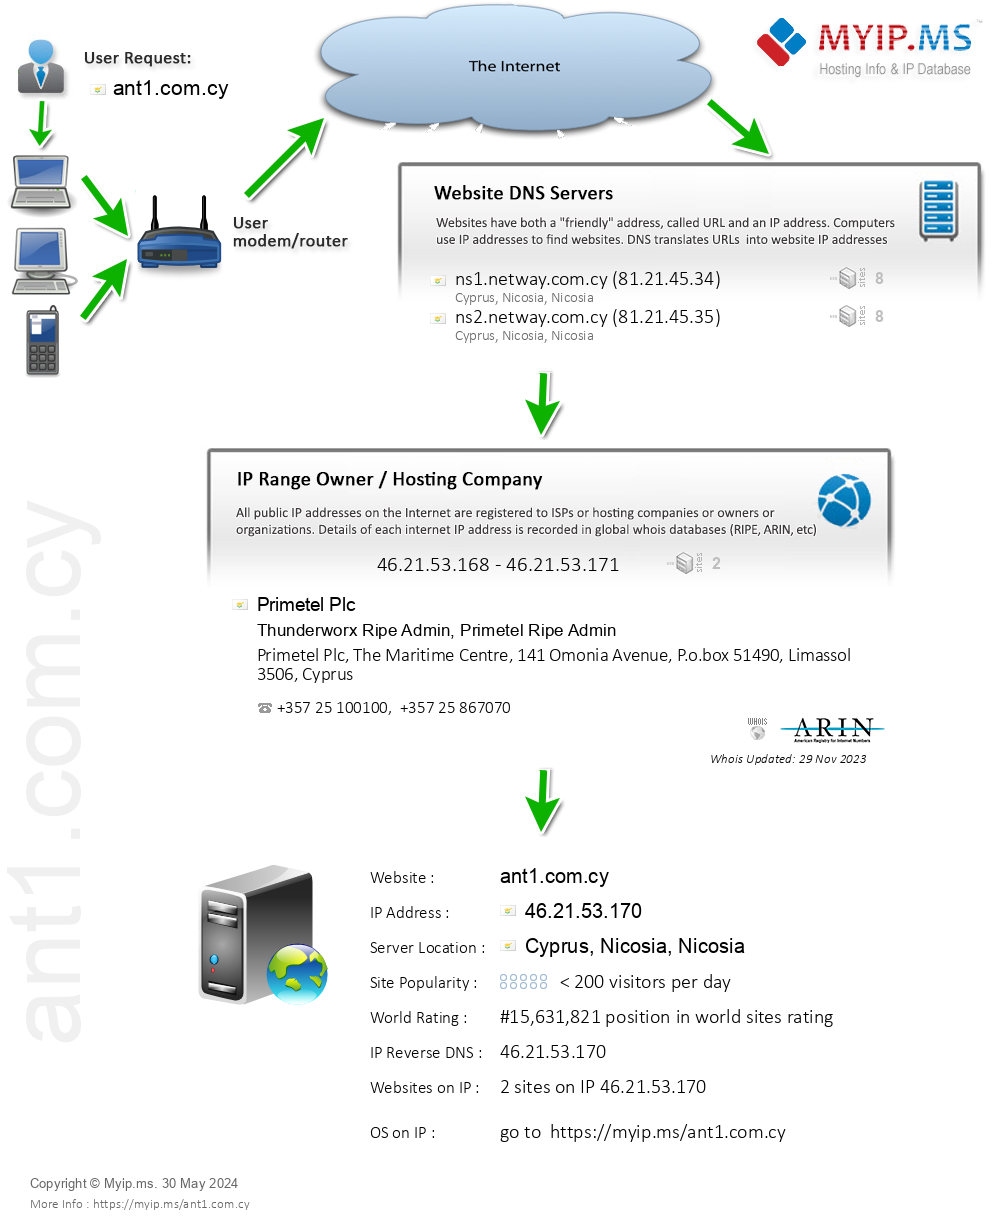 Ant1.com.cy - Website Hosting Visual IP Diagram